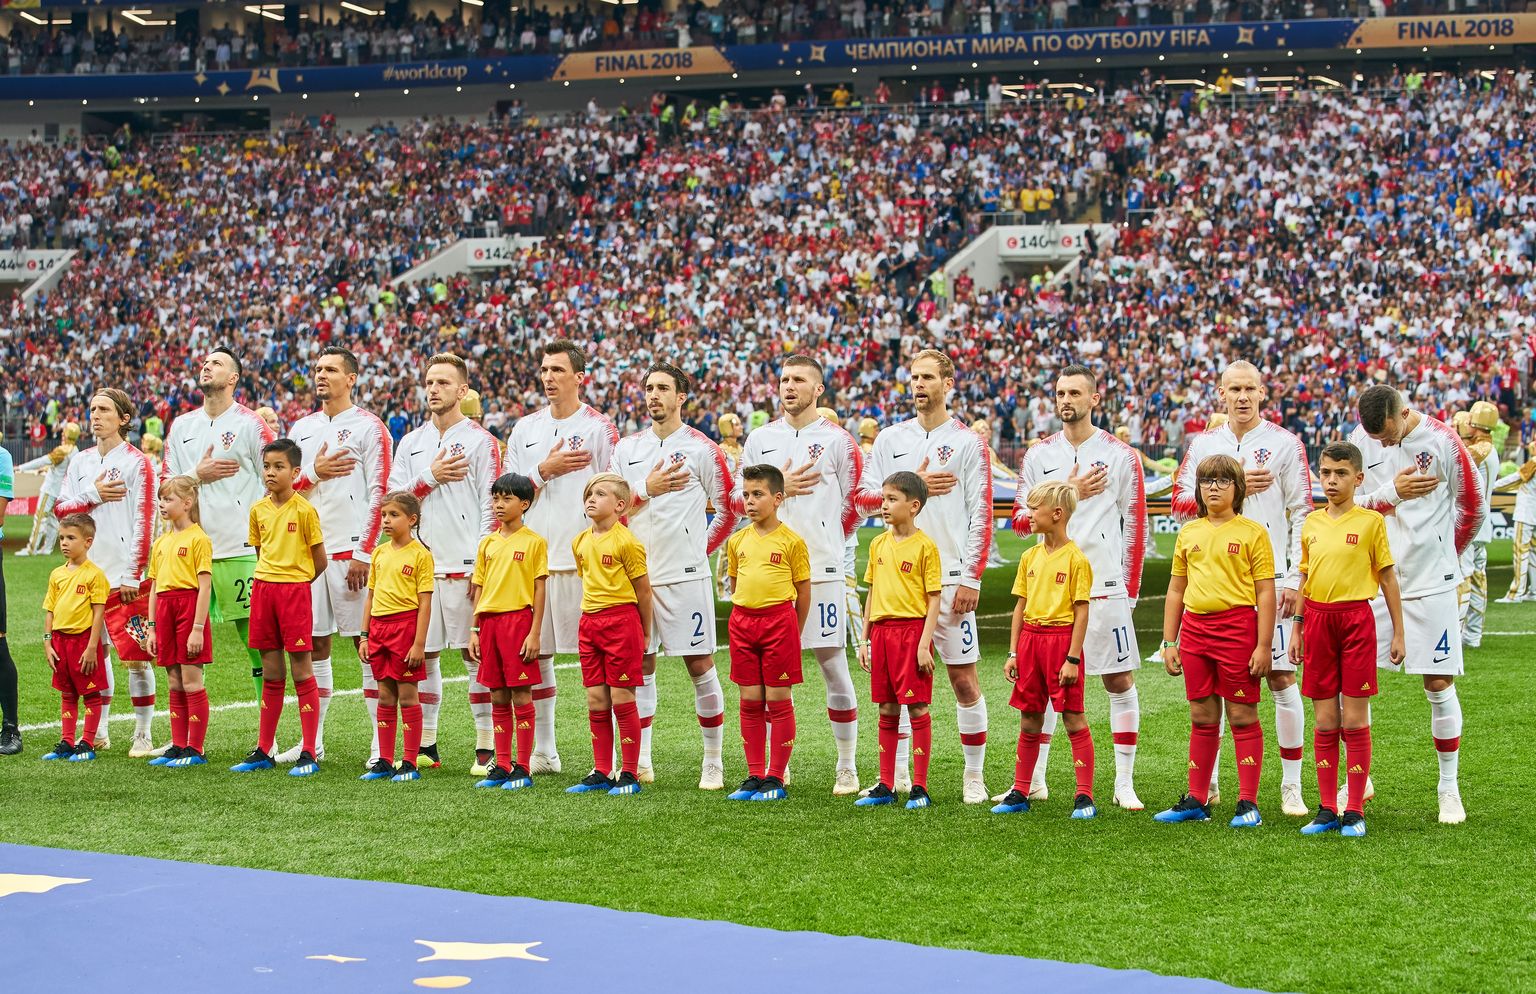 Horvaatia koondis laulmas enne jalgpalli MM-i finaalmängu oma riigi hümni. Tristen Kool (paremalt kolmas) seismas Brozovići ees.